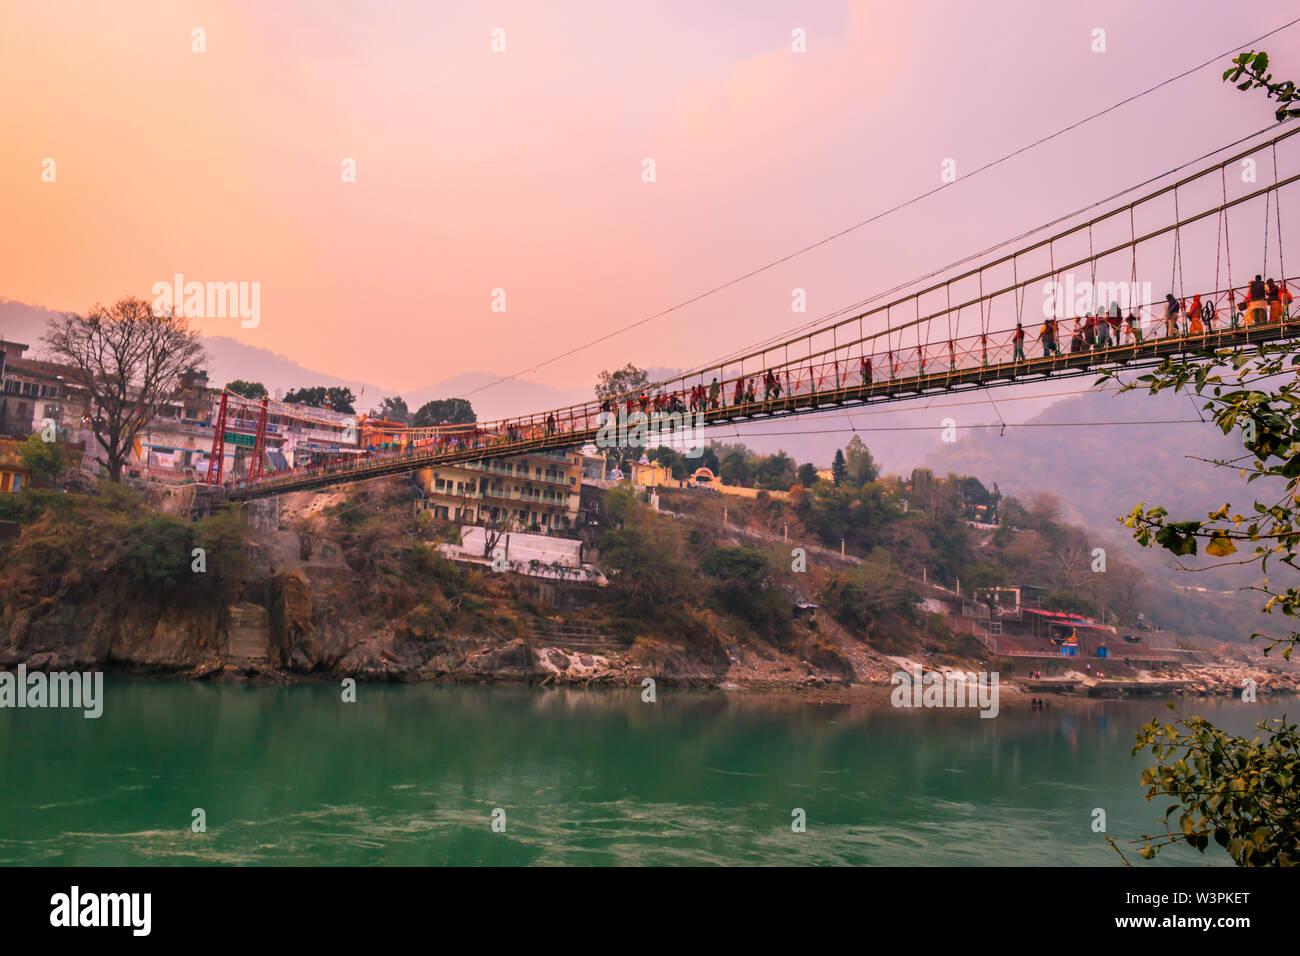 Vue sur le fleuve Ganges et le pont Lakshman Jhoola (pont) à Rishikesh Inde Banque D'Images